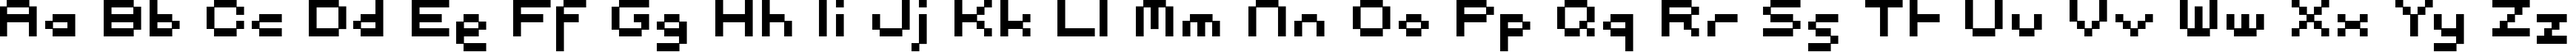 Пример написания английского алфавита шрифтом Pixel